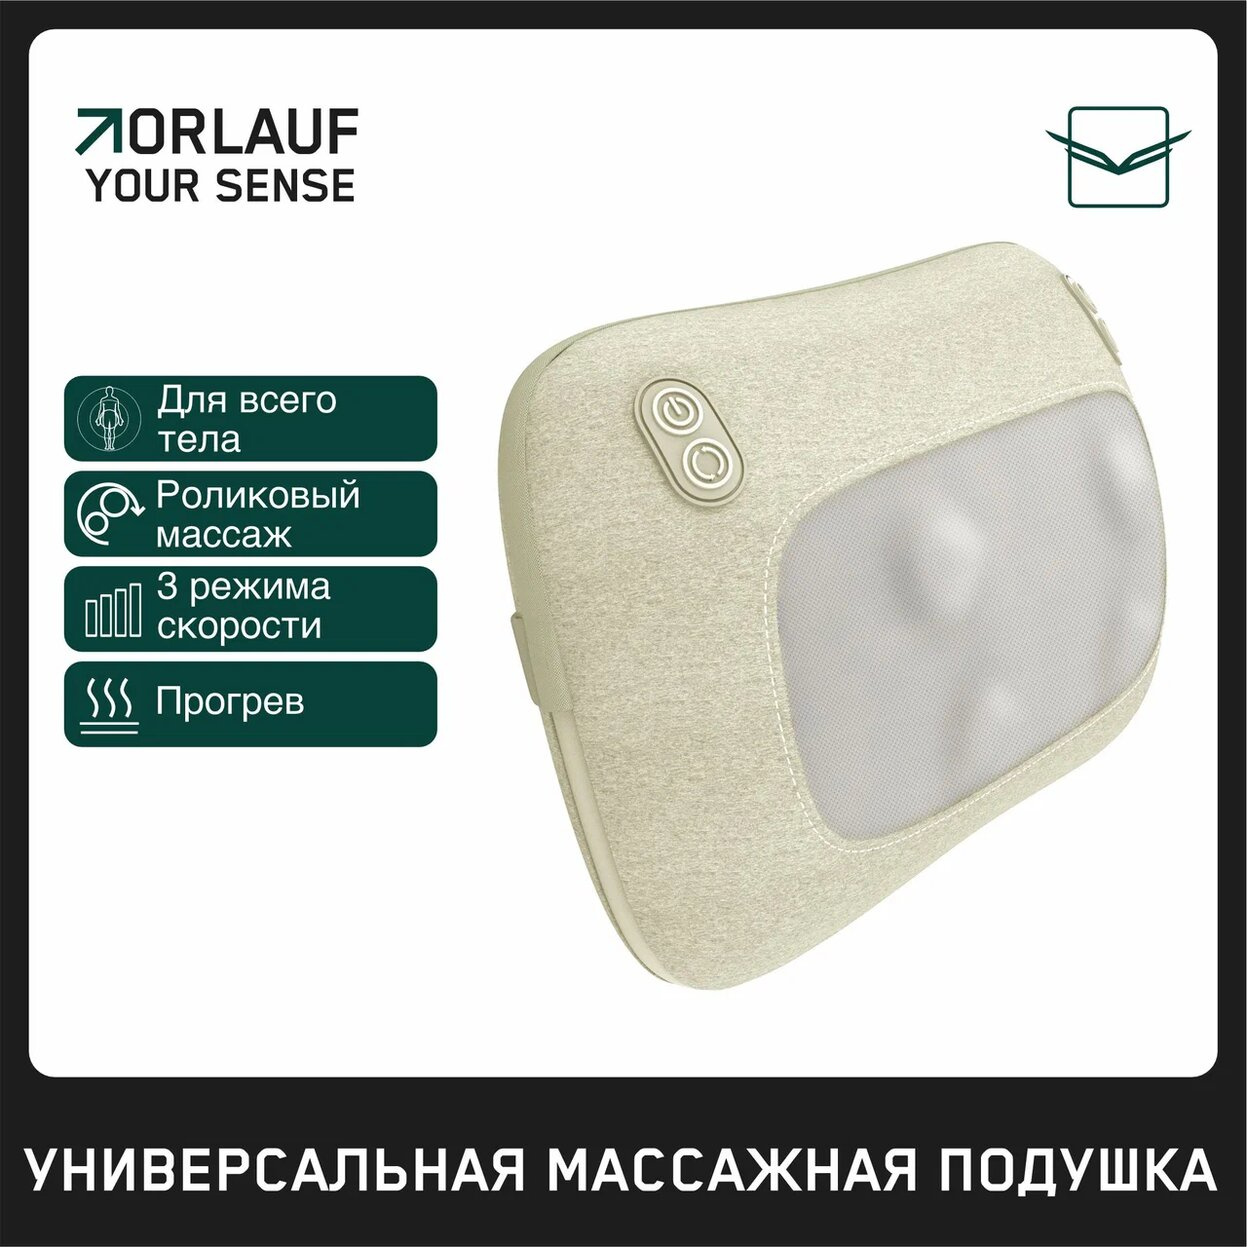 Your Sense в Волгограде по цене 9400 ₽ в категории портативные массажеры Orlauf